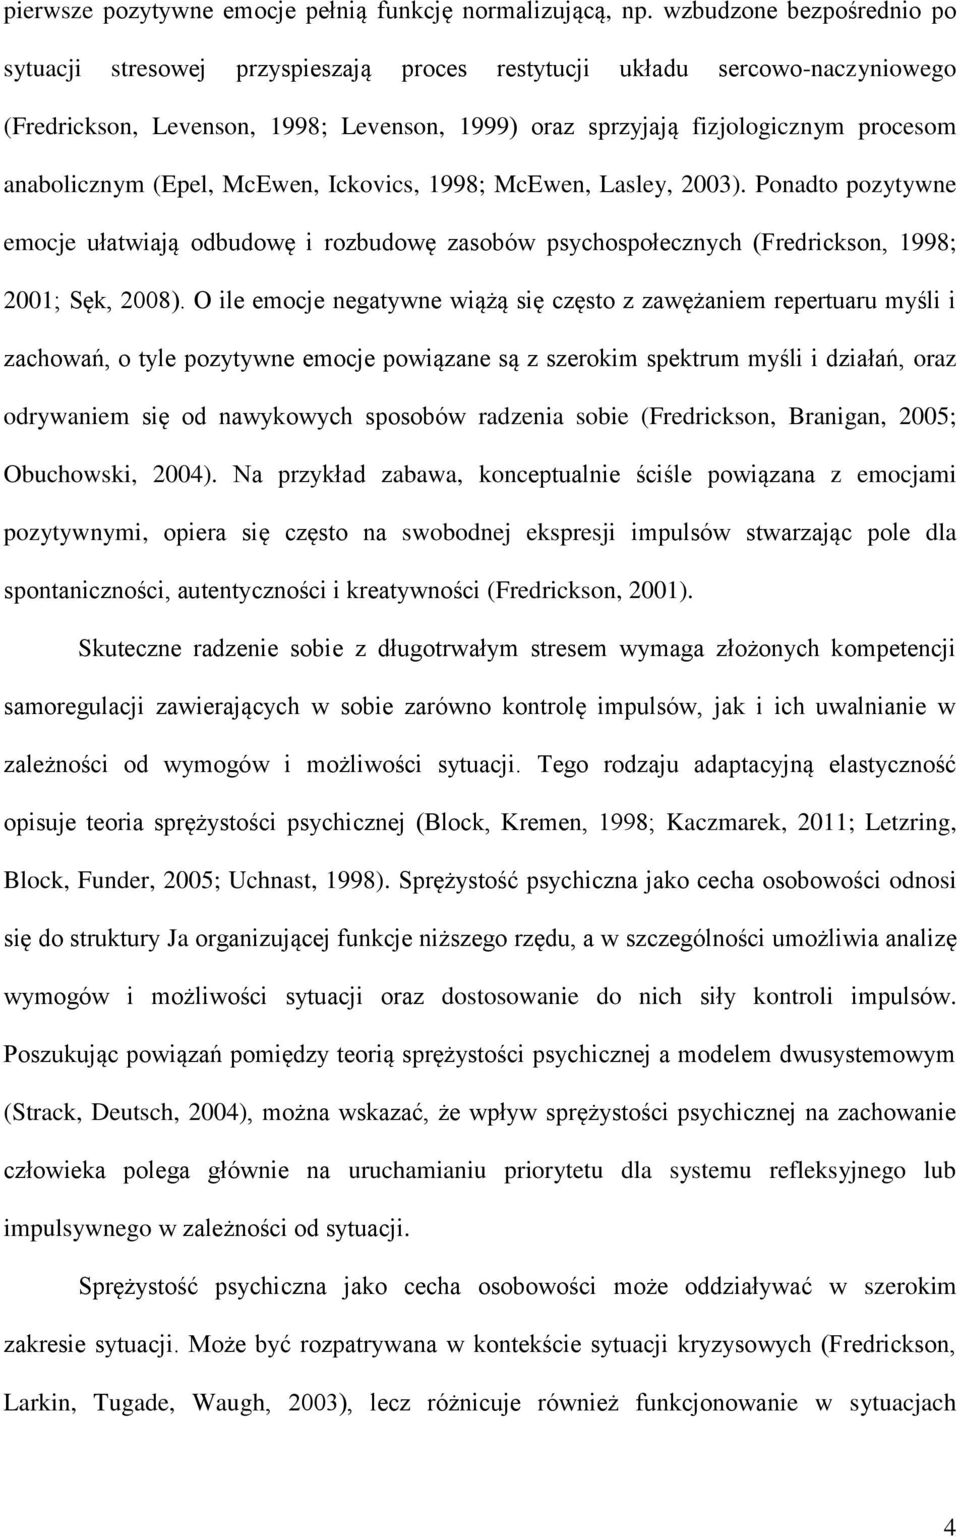 anabolicznym (Epel, McEwen, Ickovics, 1998; McEwen, Lasley, 2003). Ponadto pozytywne emocje ułatwiają odbudowę i rozbudowę zasobów psychospołecznych (Fredrickson, 1998; 2001; Sęk, 2008).